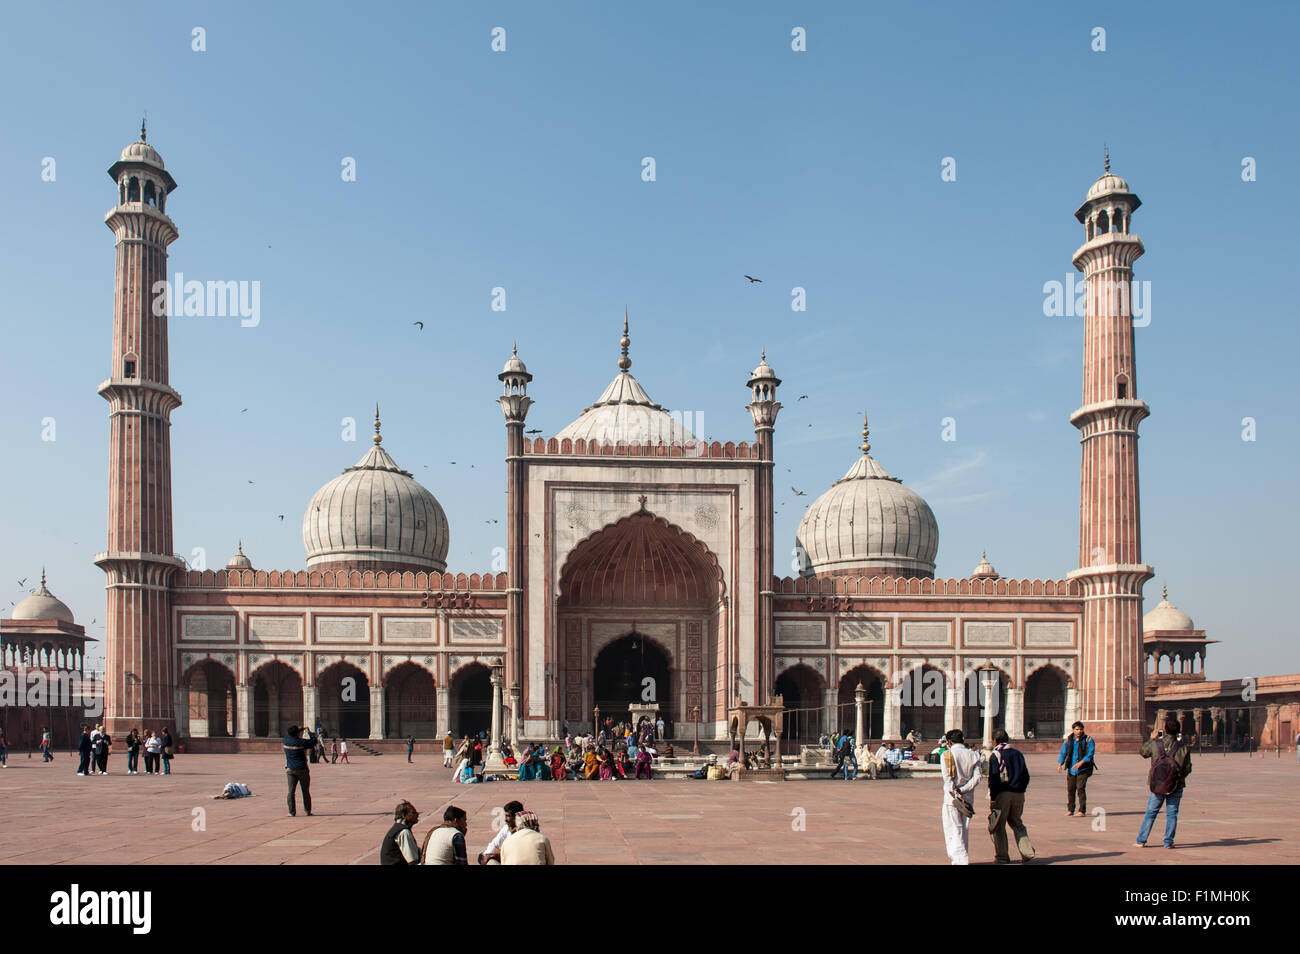 Delhi, India. Jama Masjid Friday Mosque. Stock Photo